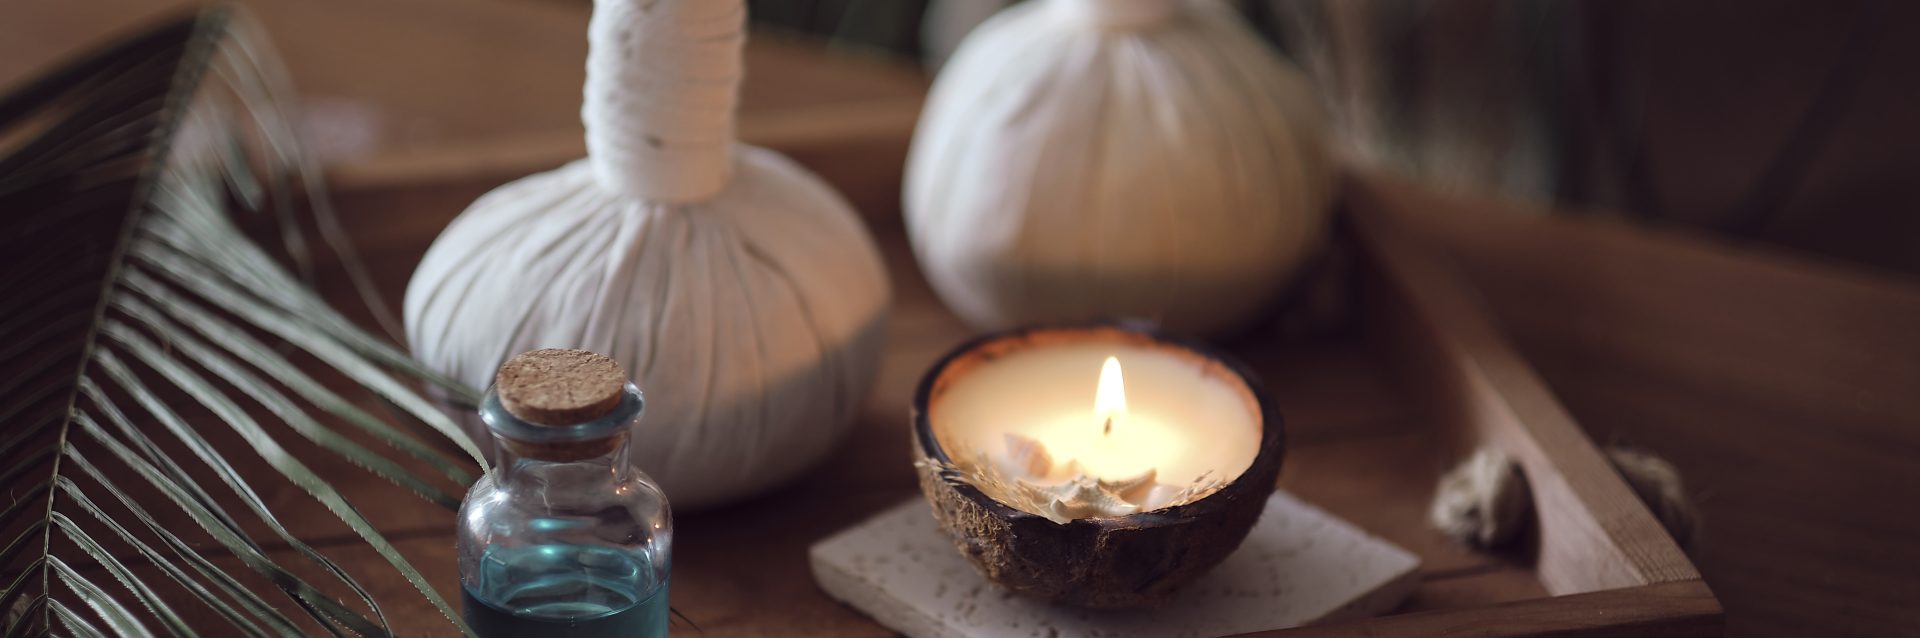 Kräuterstempel, Kerze und ayurvedisches Öl